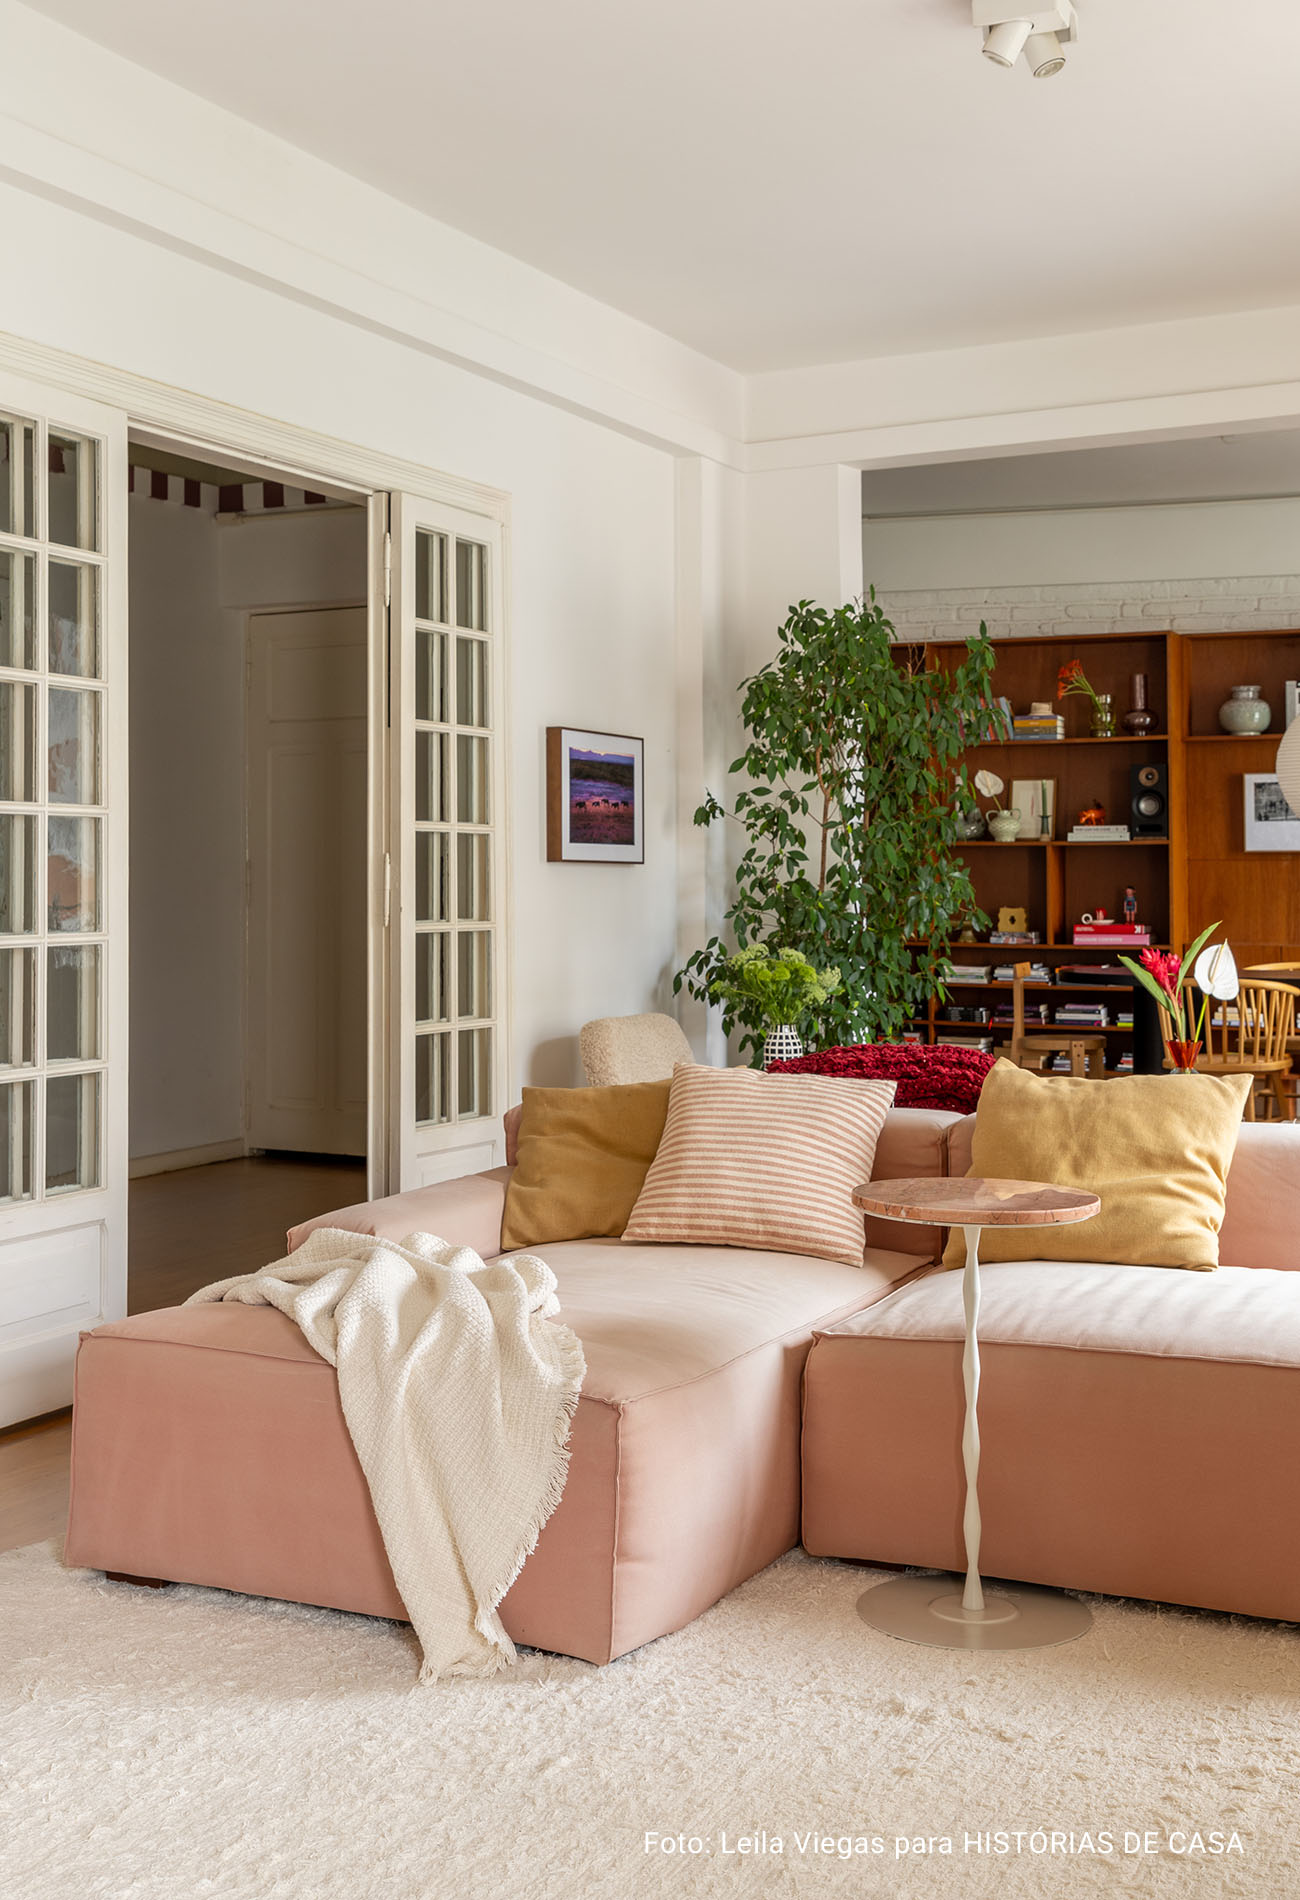 Apartamento antigo com sala integrada, luz natural e decoracão em cores neutras.